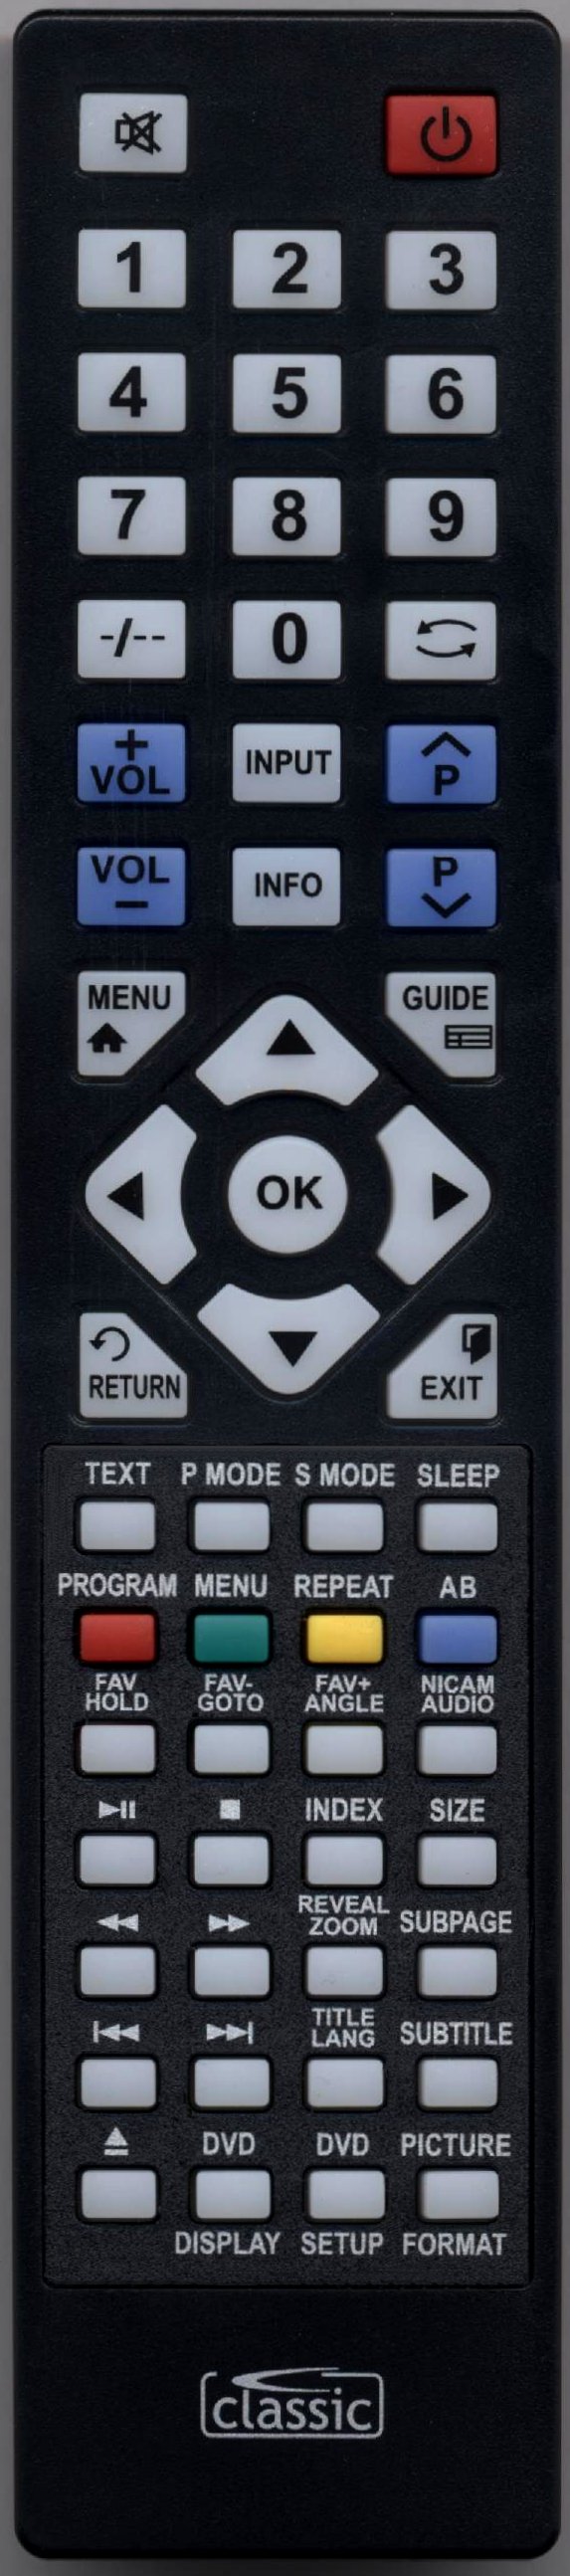 UMC X19/17C Remote Control